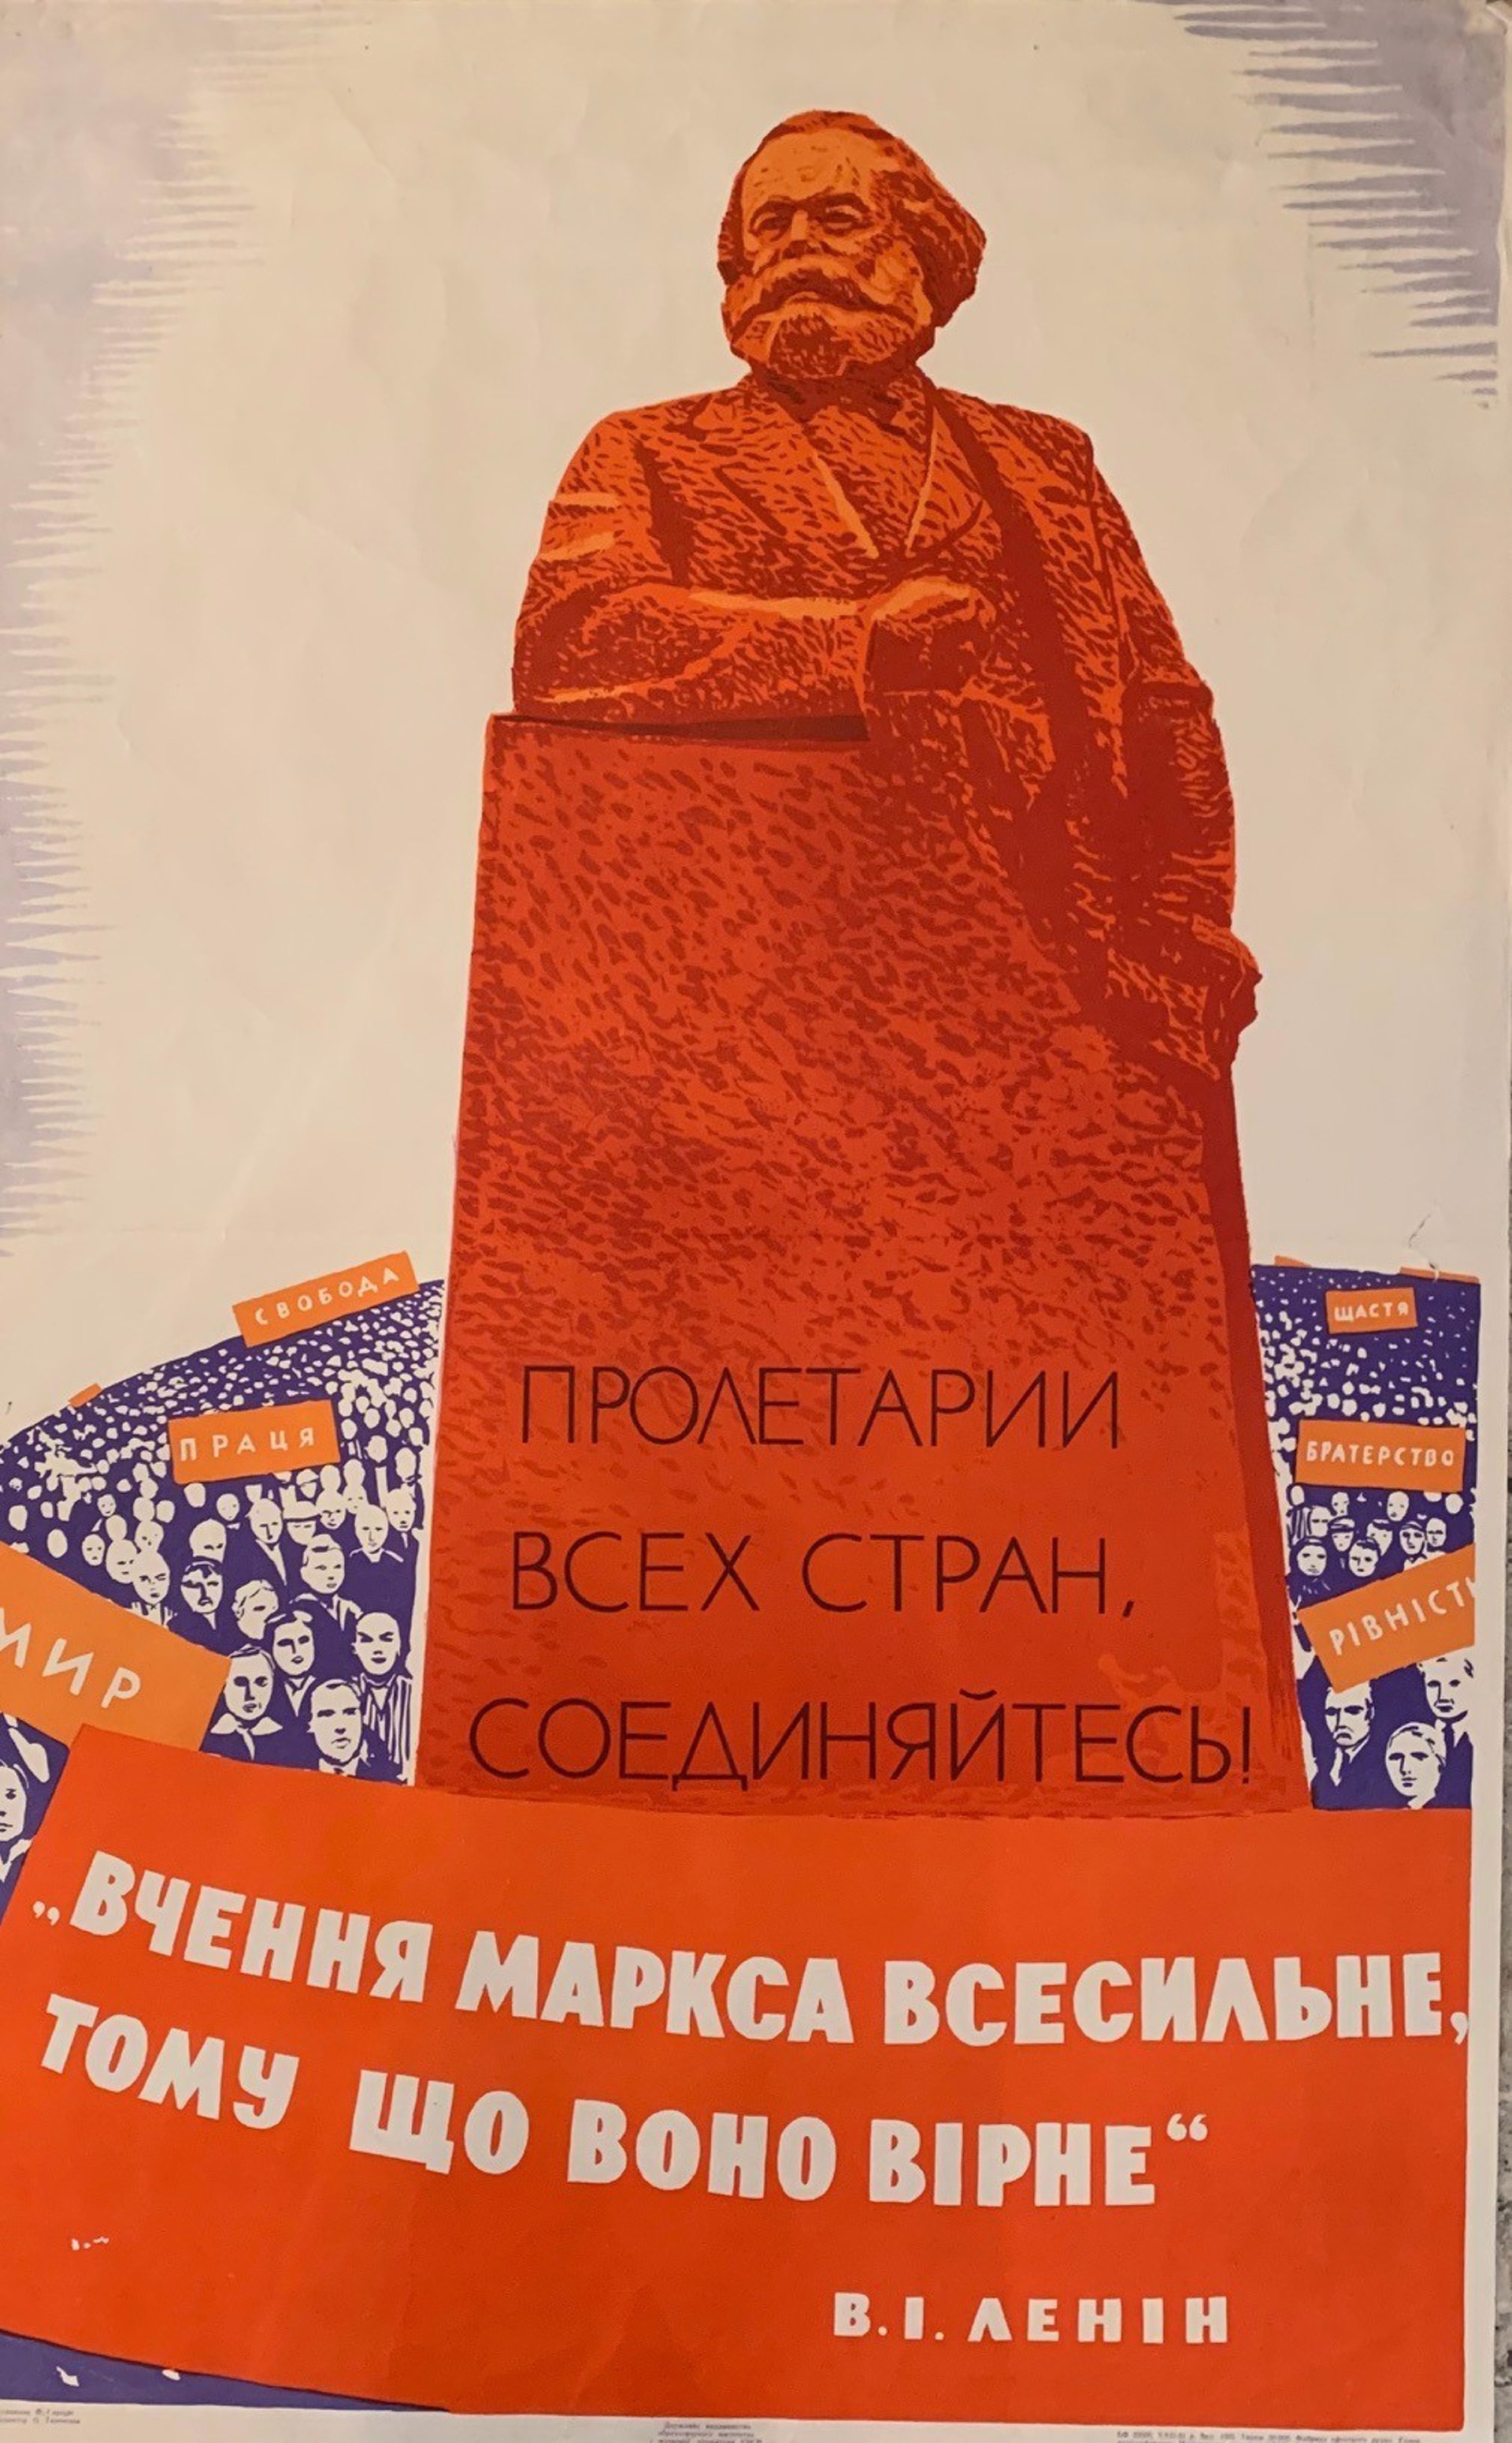 Marx by Fedir Glyshuk